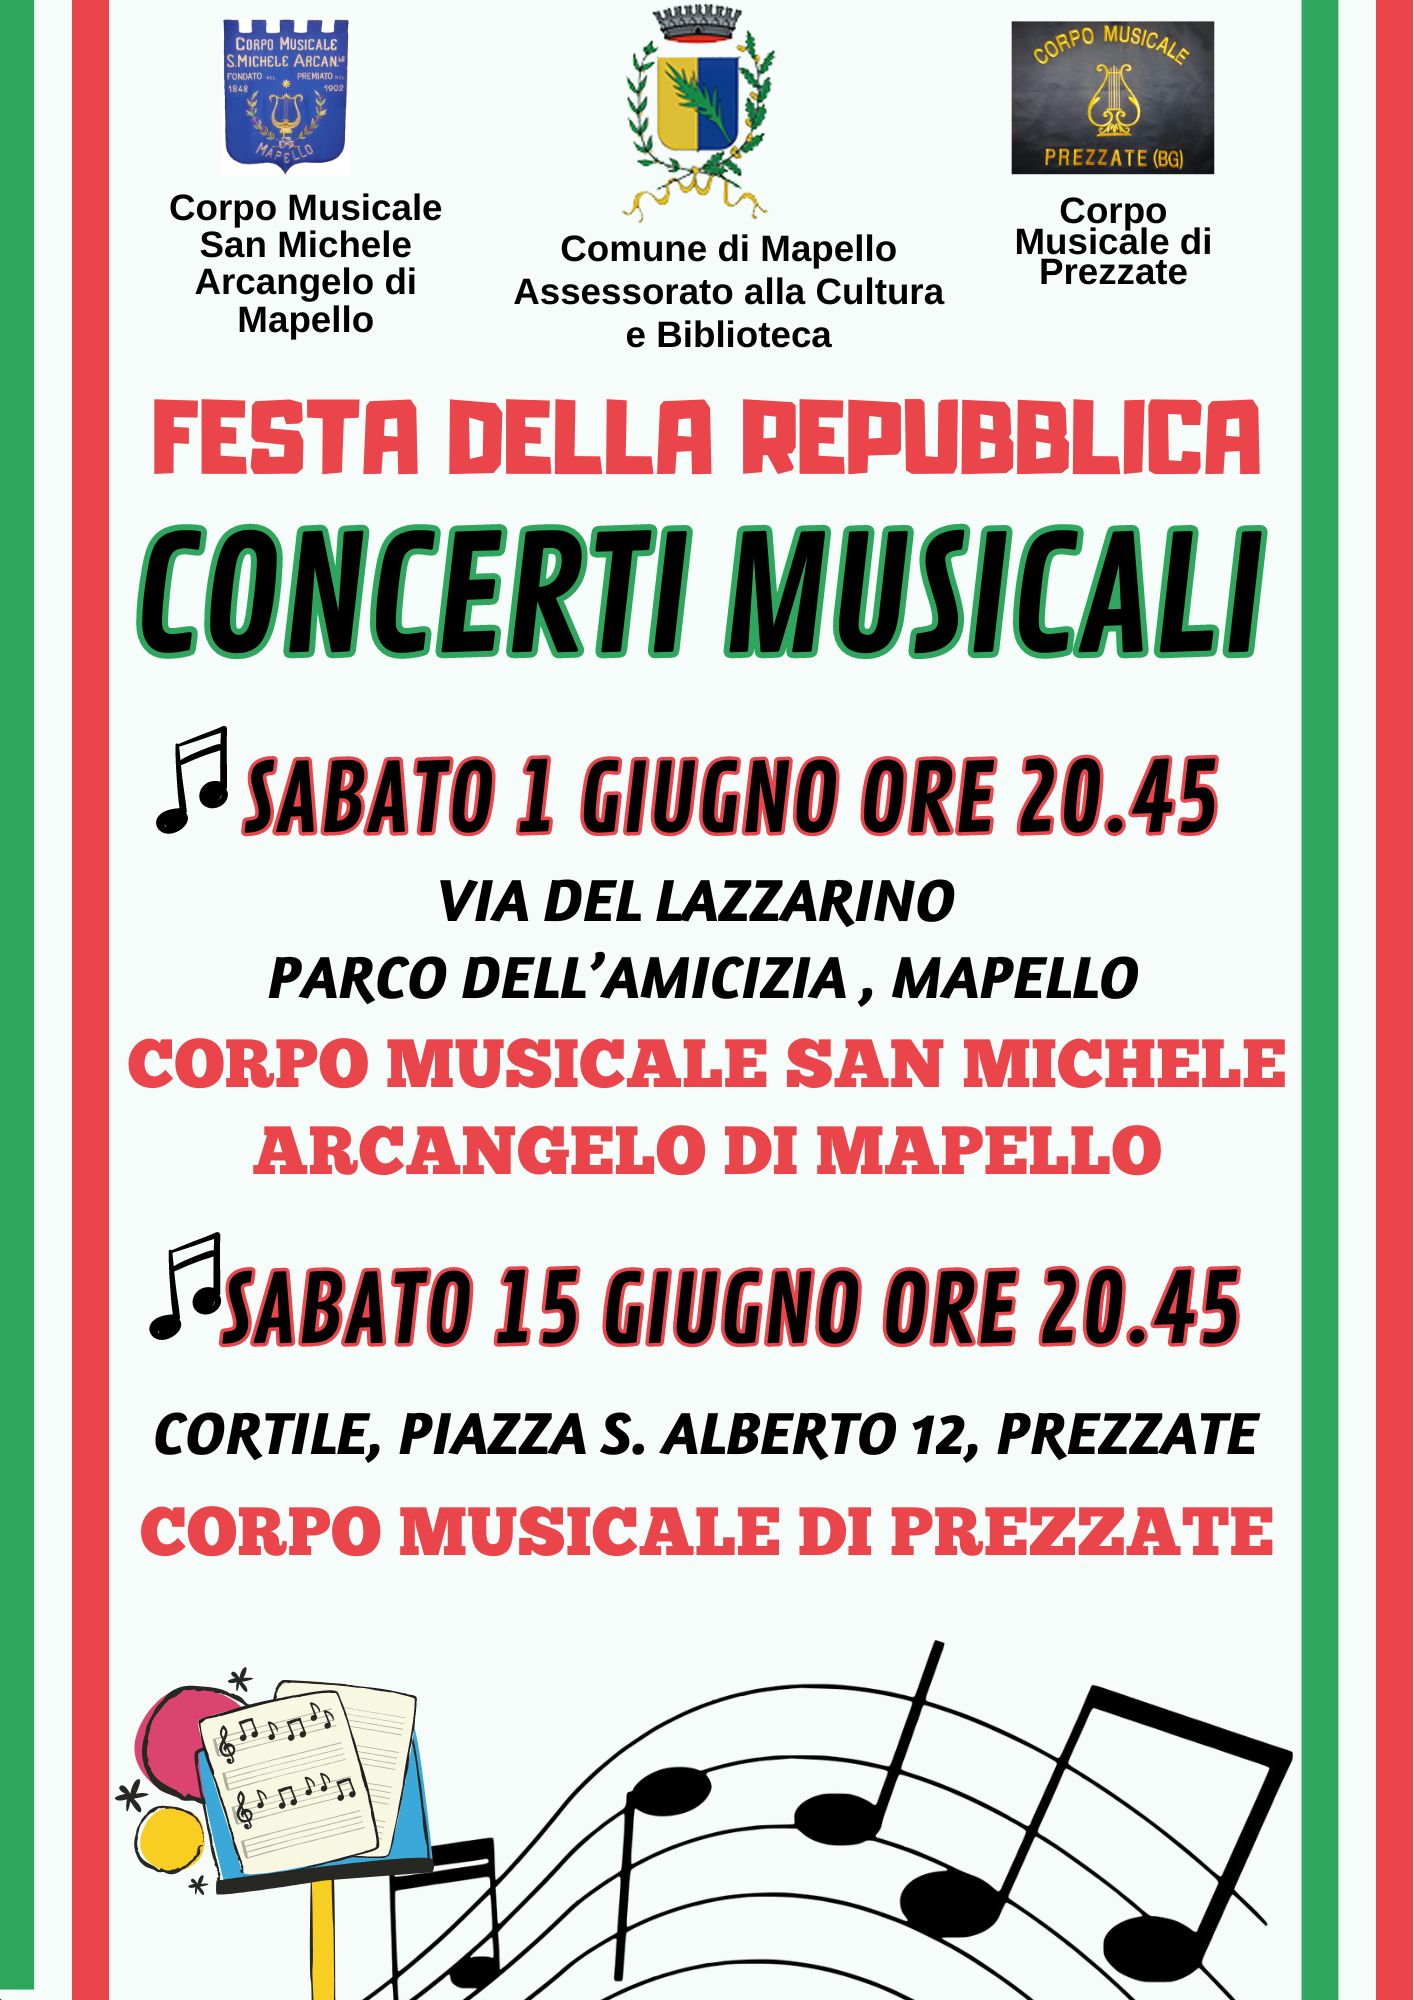 Festa della Repubblica: Concerti Musicali